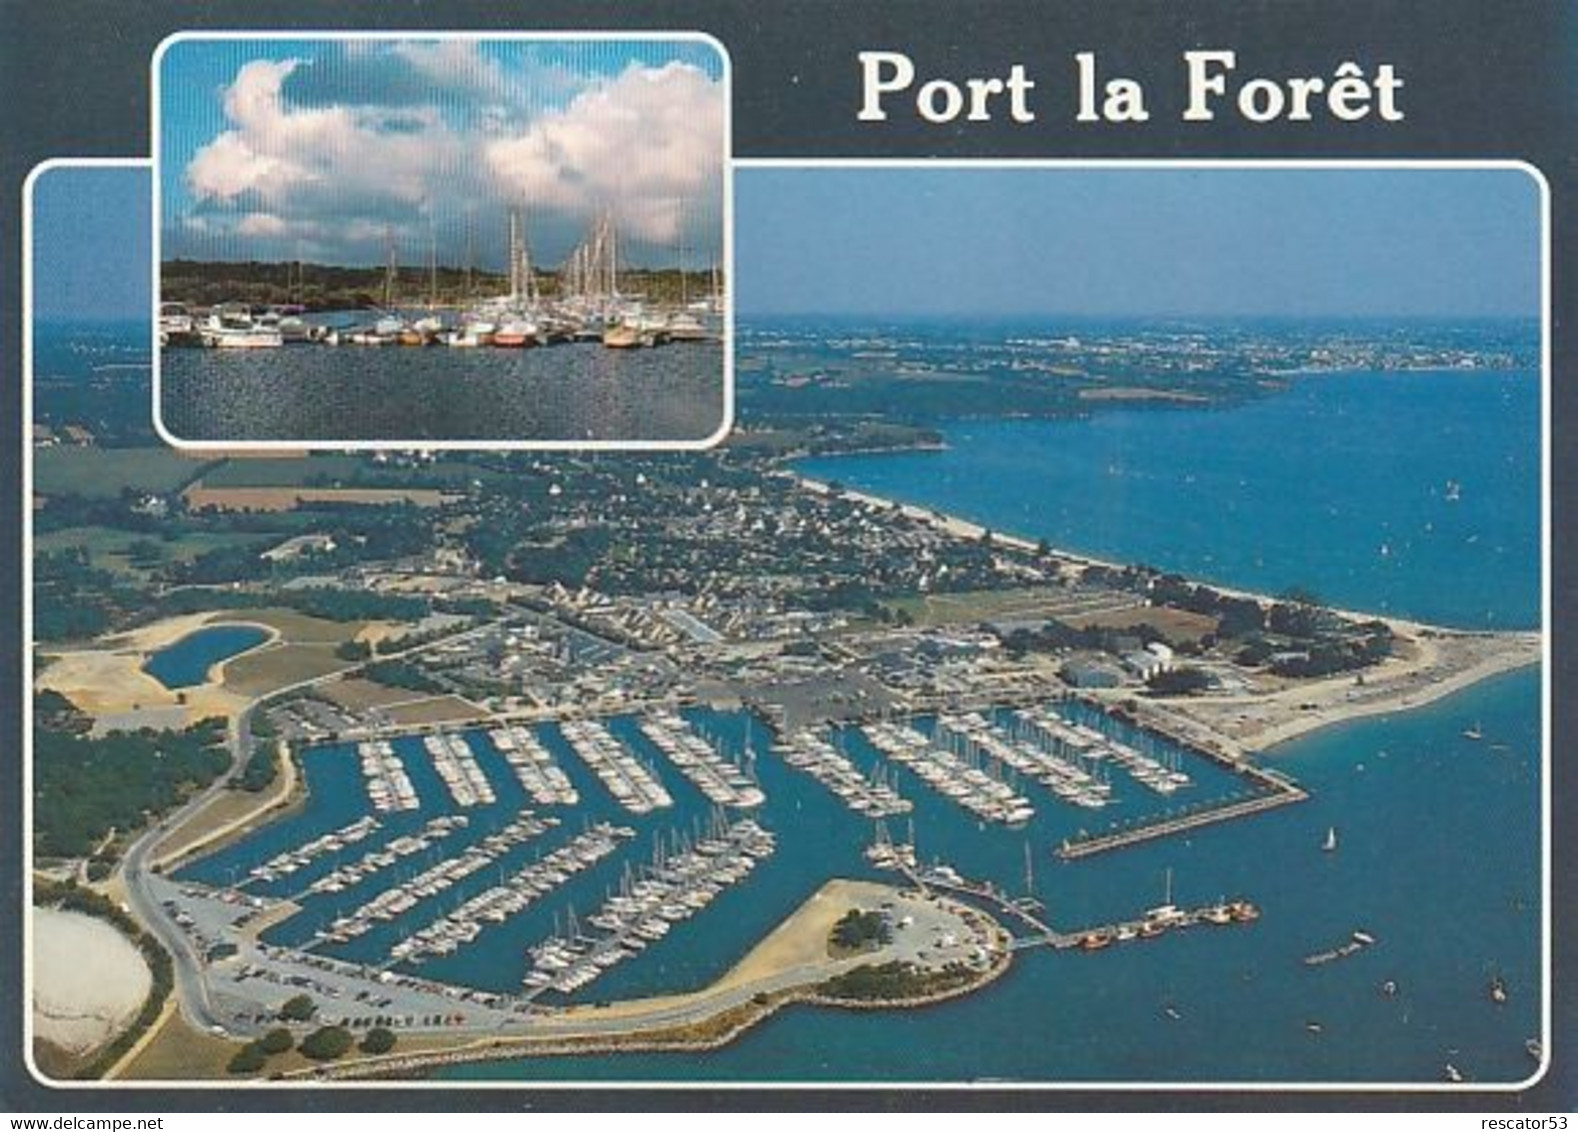 Cpsm Port La Forêt Vue Aérienne - La Forêt-Fouesnant